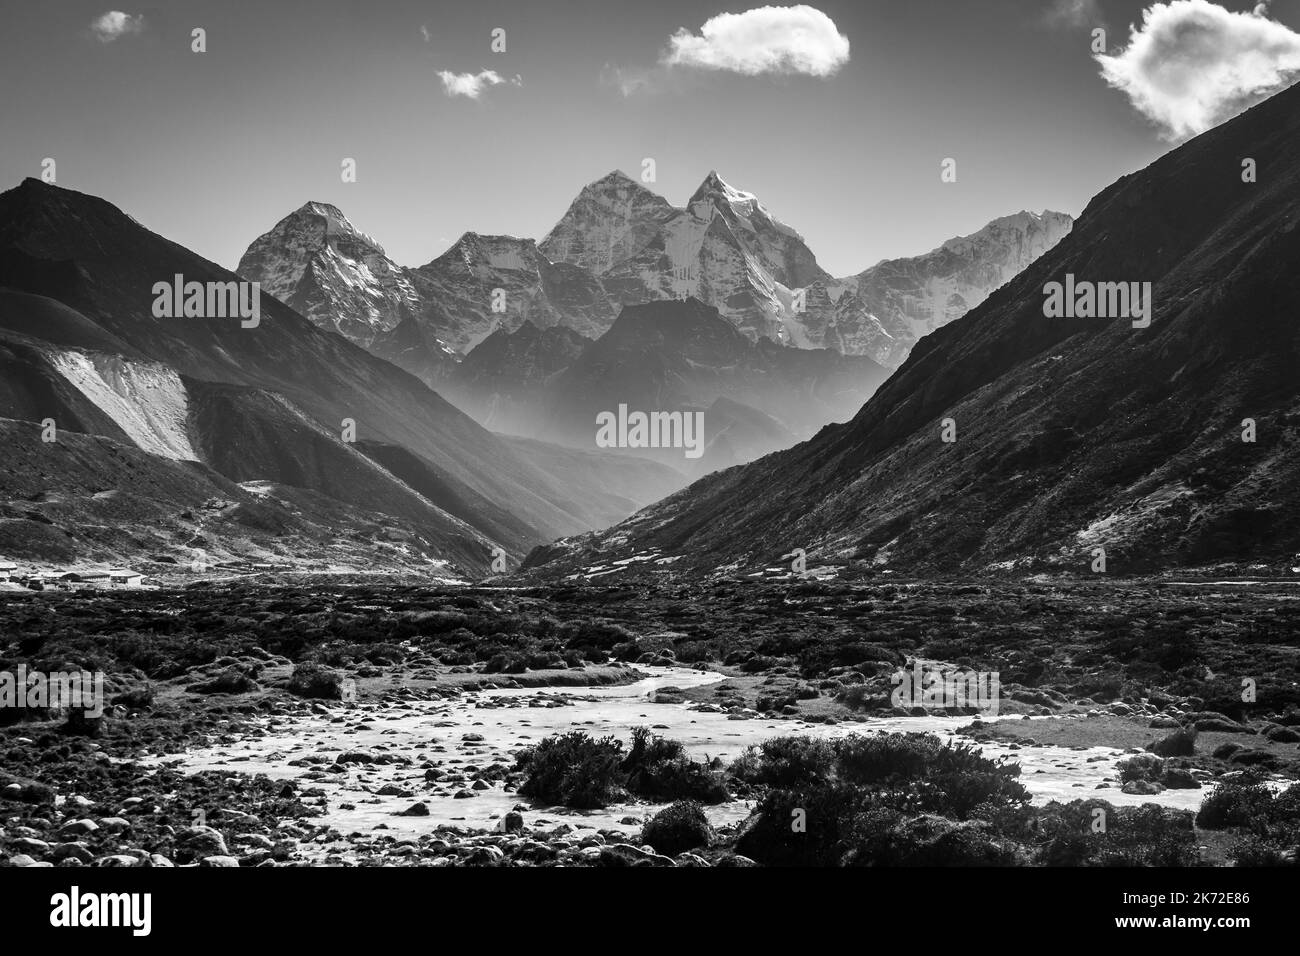 Dramatische Schwarz-Weiß-Ansicht des Ama Dablam-Berges entlang des Everest-Basislager-Treks im Himalaya in Nepal Stockfoto